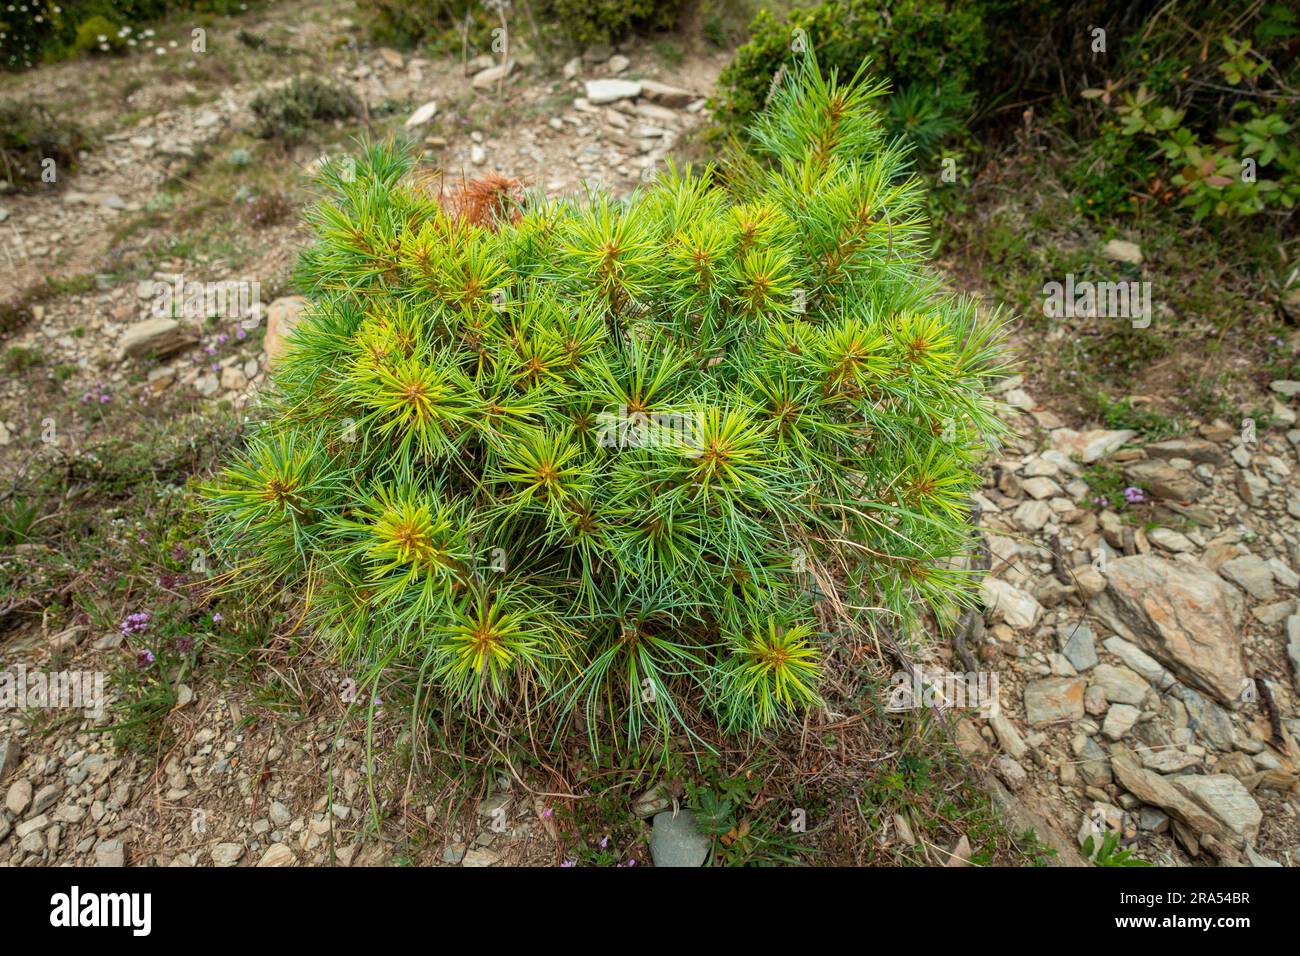 Cathaya, un genre de la famille des pins, Pinaceae, avec une espèce vivante connue, Cathaya argyrophylla. Région himalayenne d'Uttarakhand. Banque D'Images